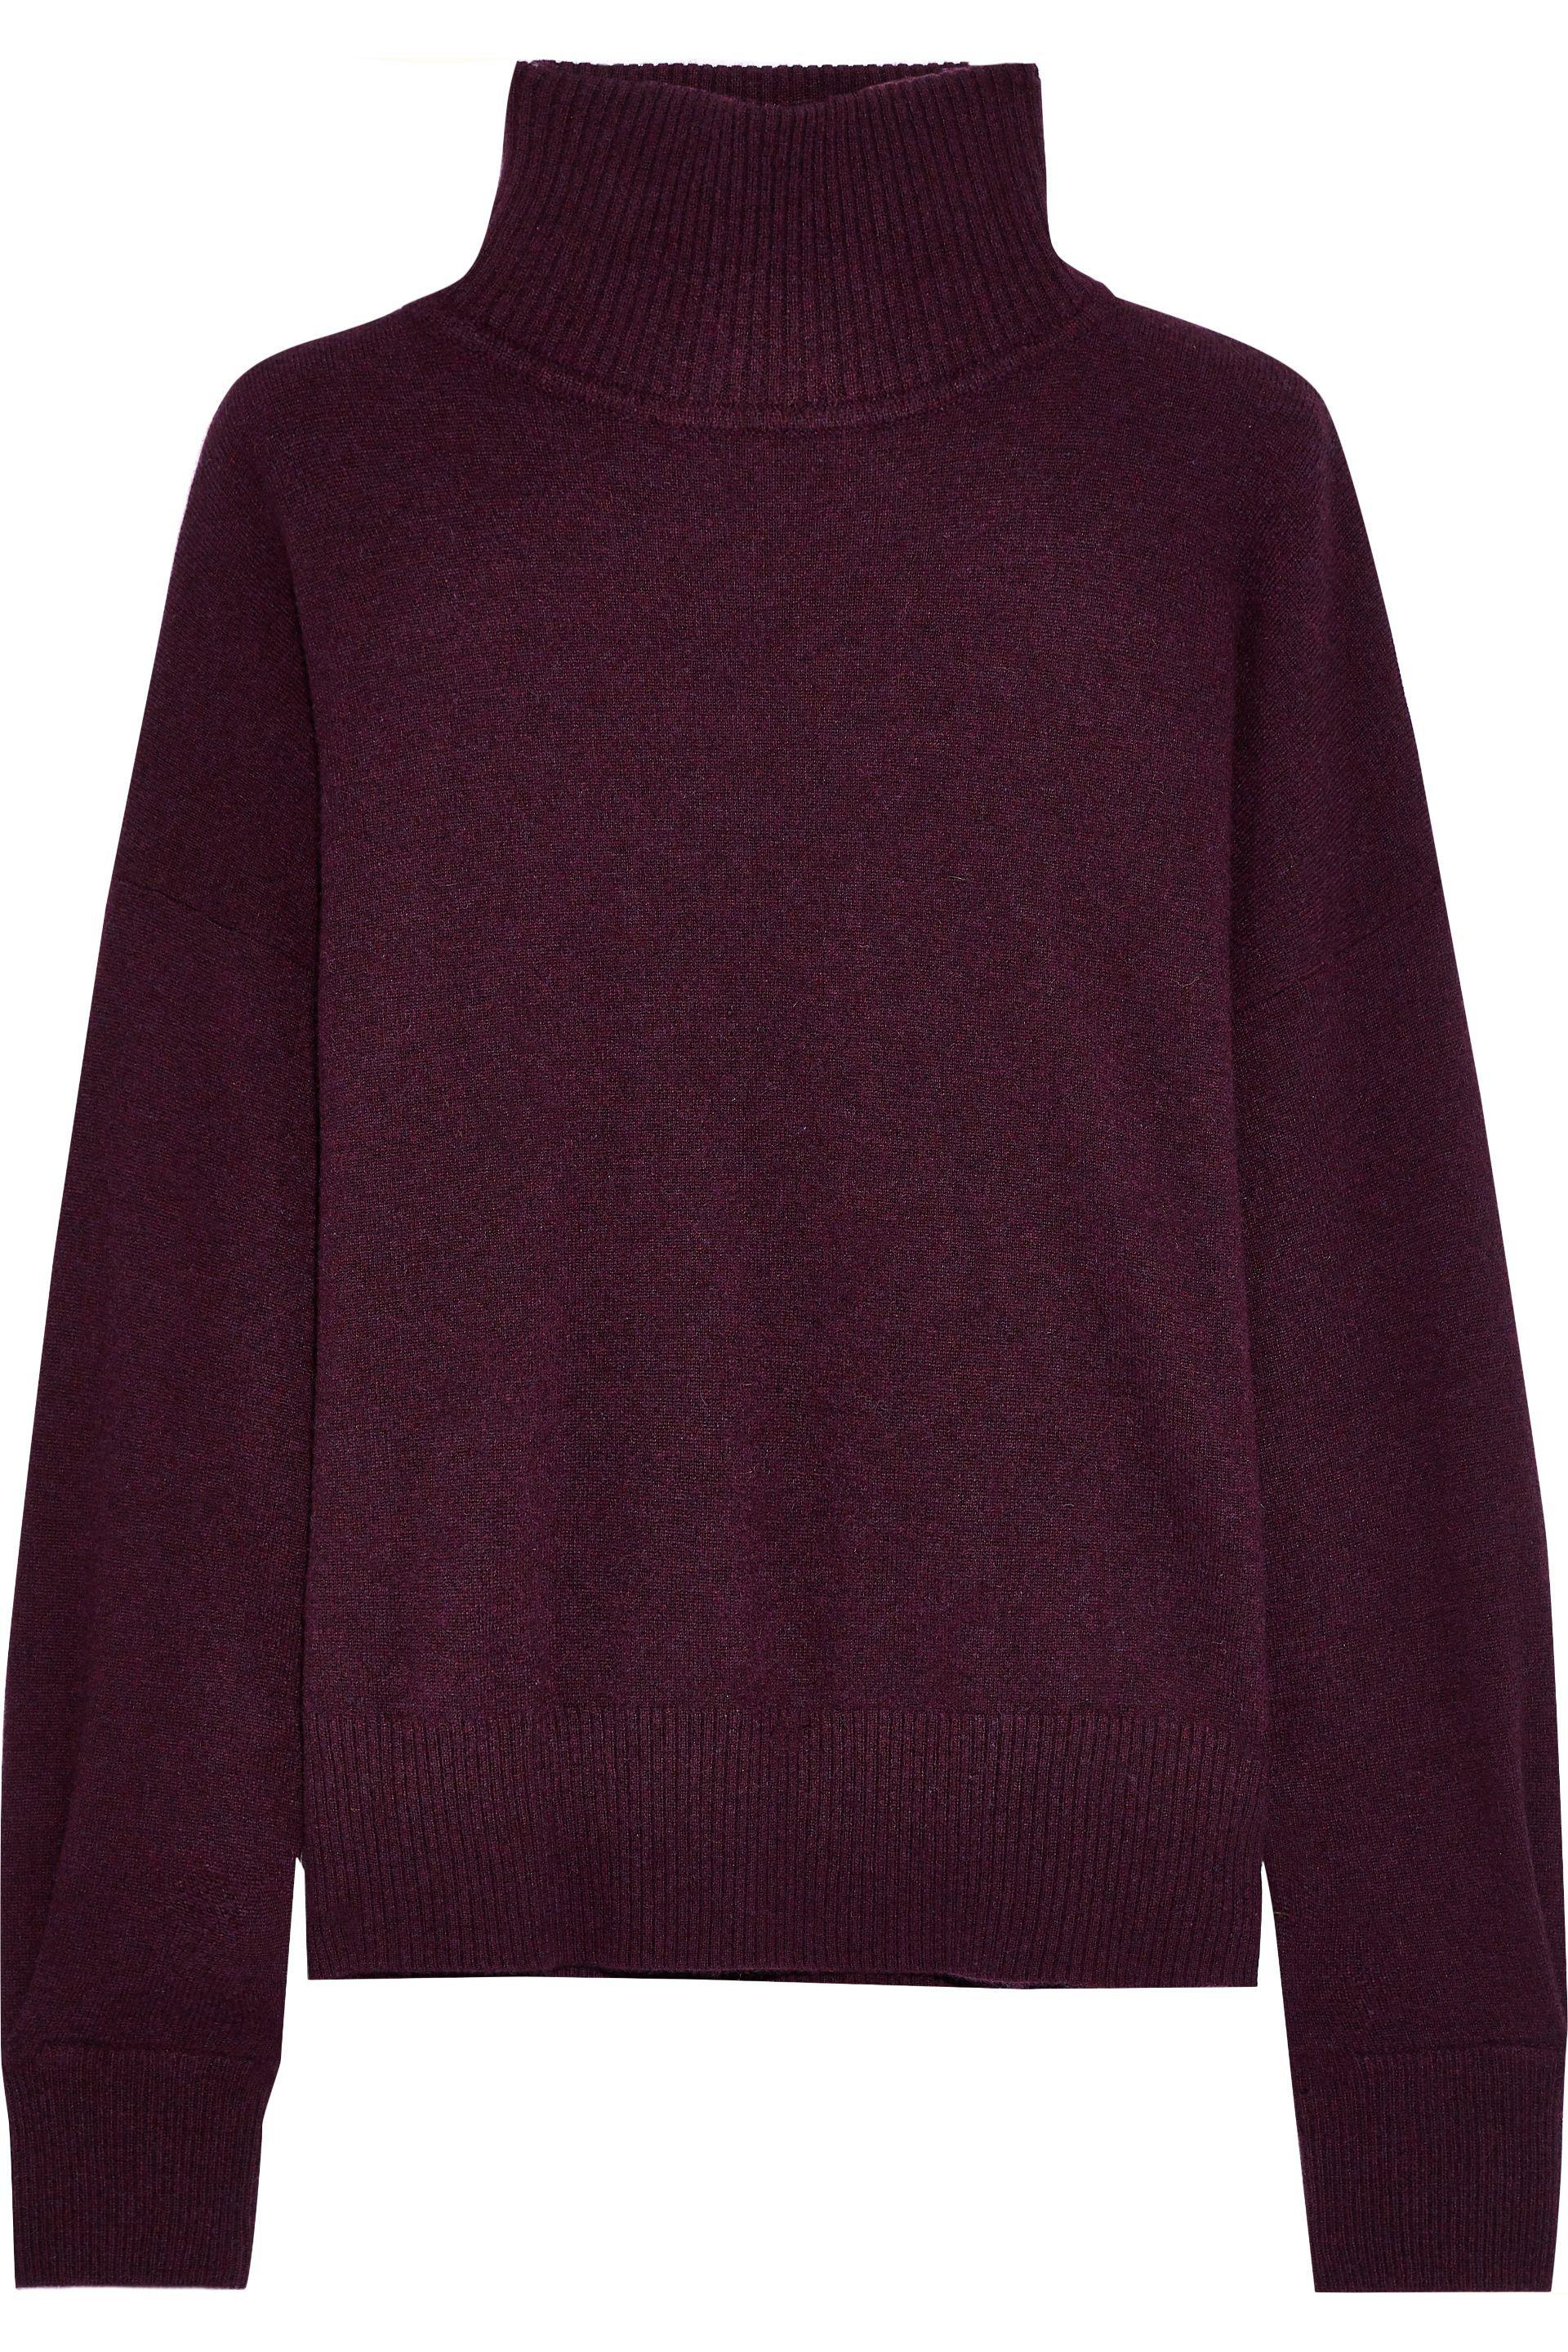 Autumn Cashmere Cashmere Turtleneck Sweater Plum in Purple - Lyst